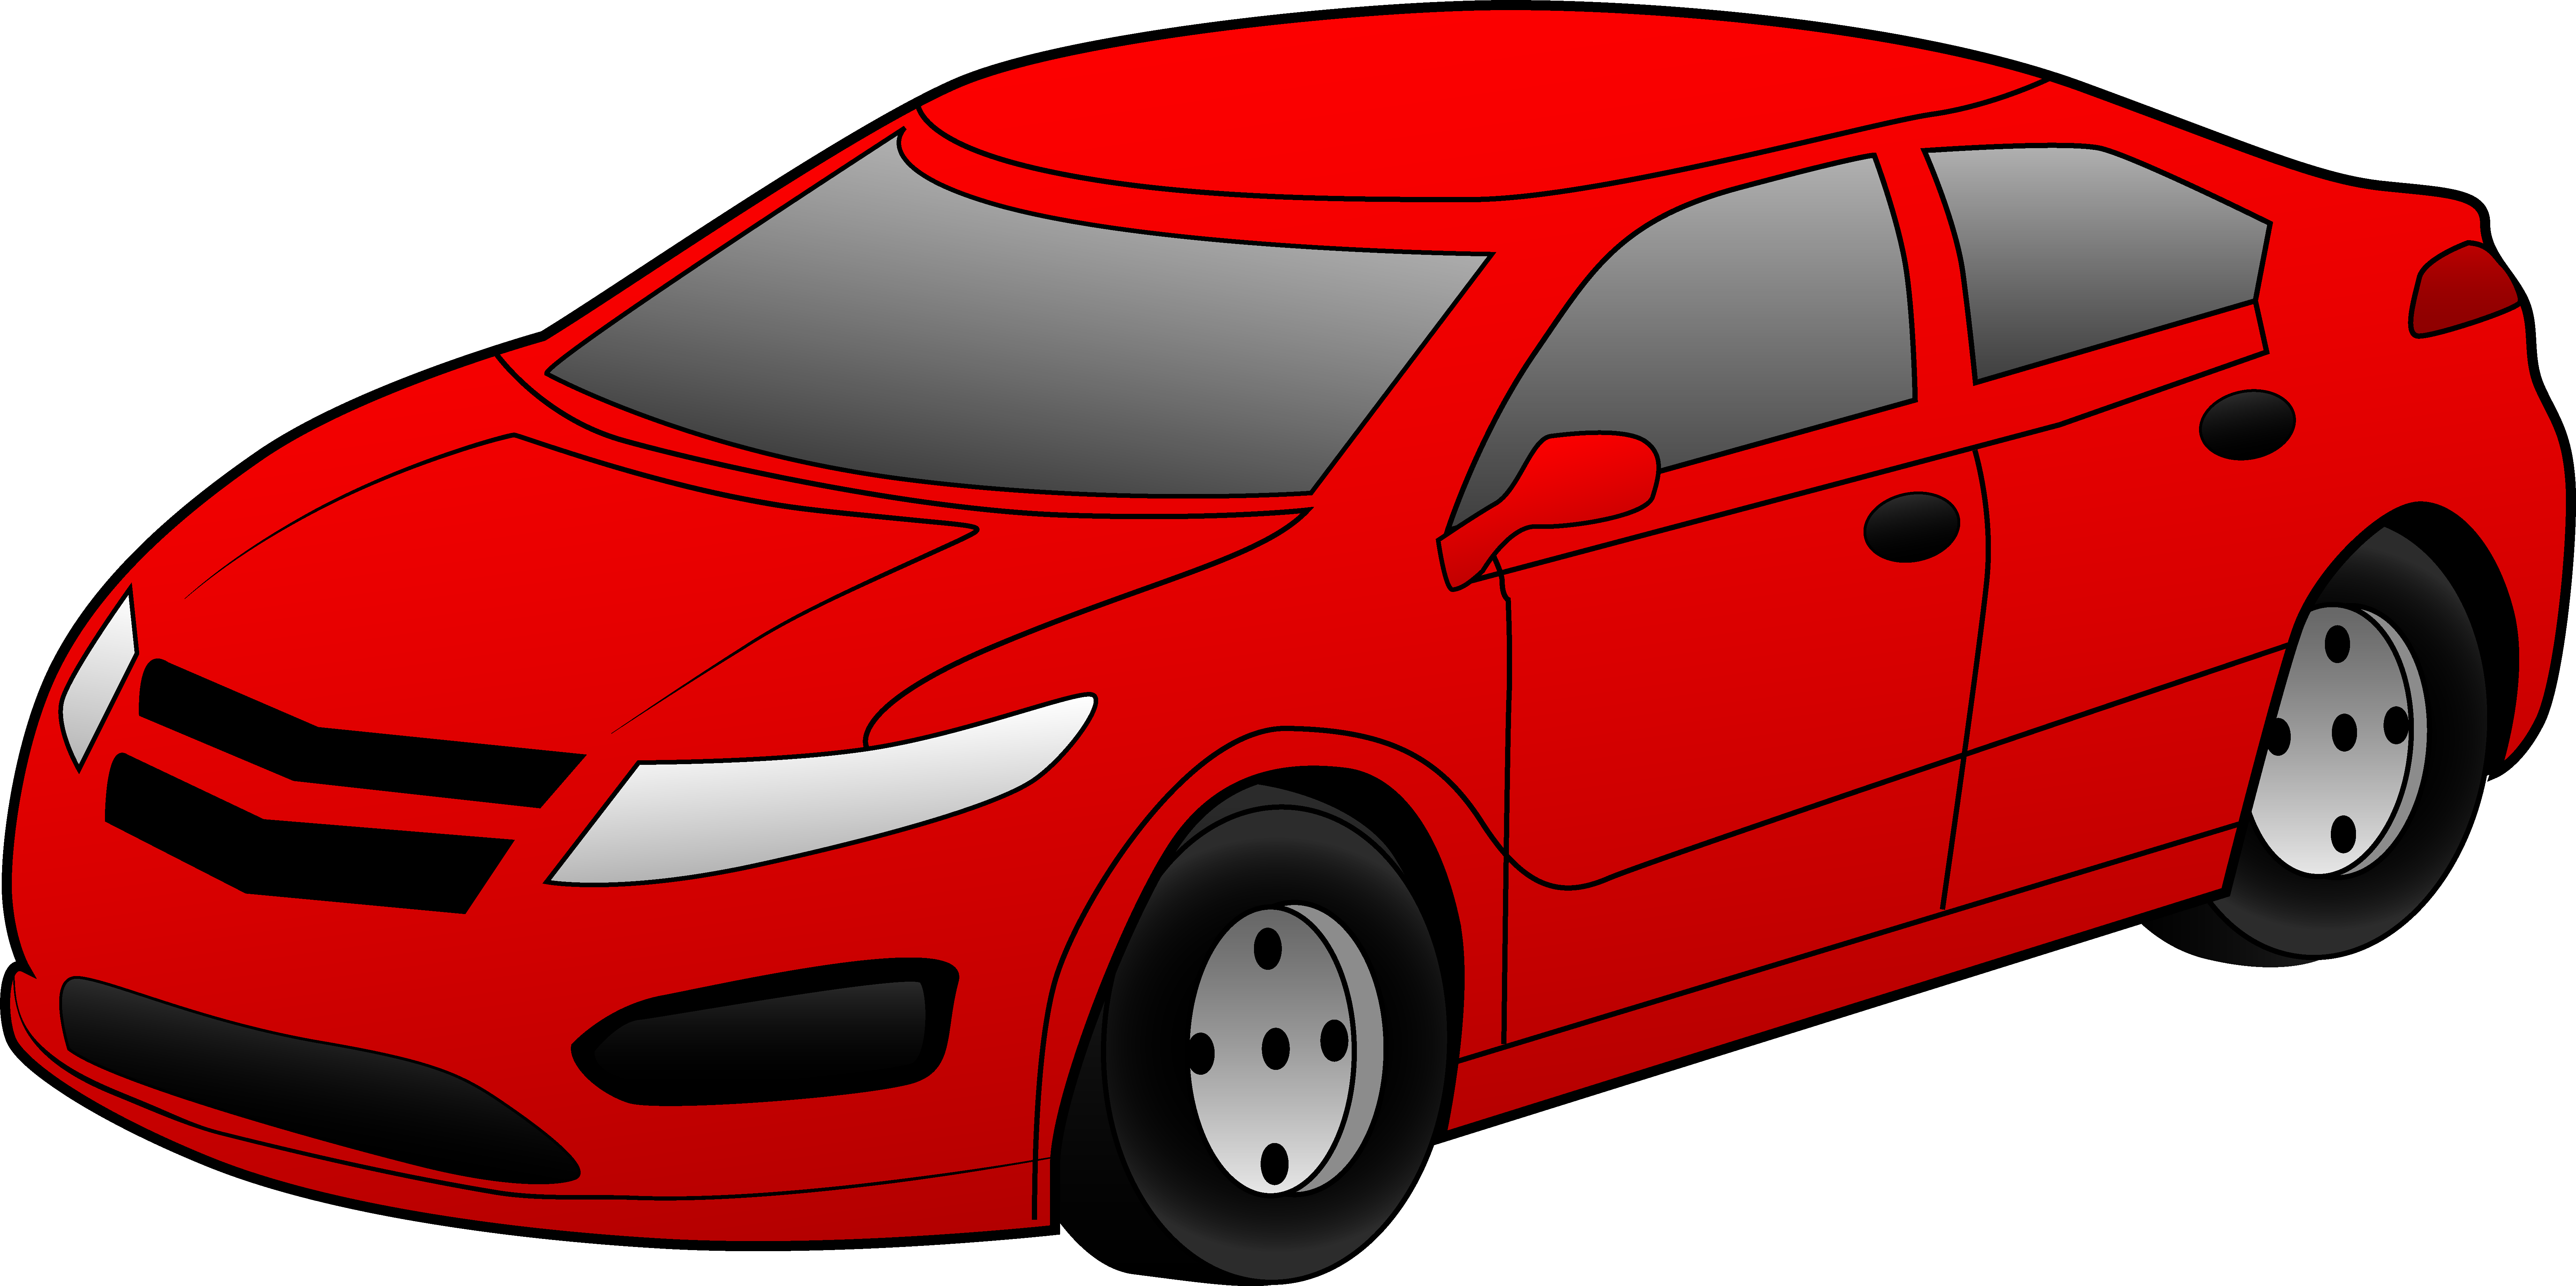 Cartoon red car free clipart